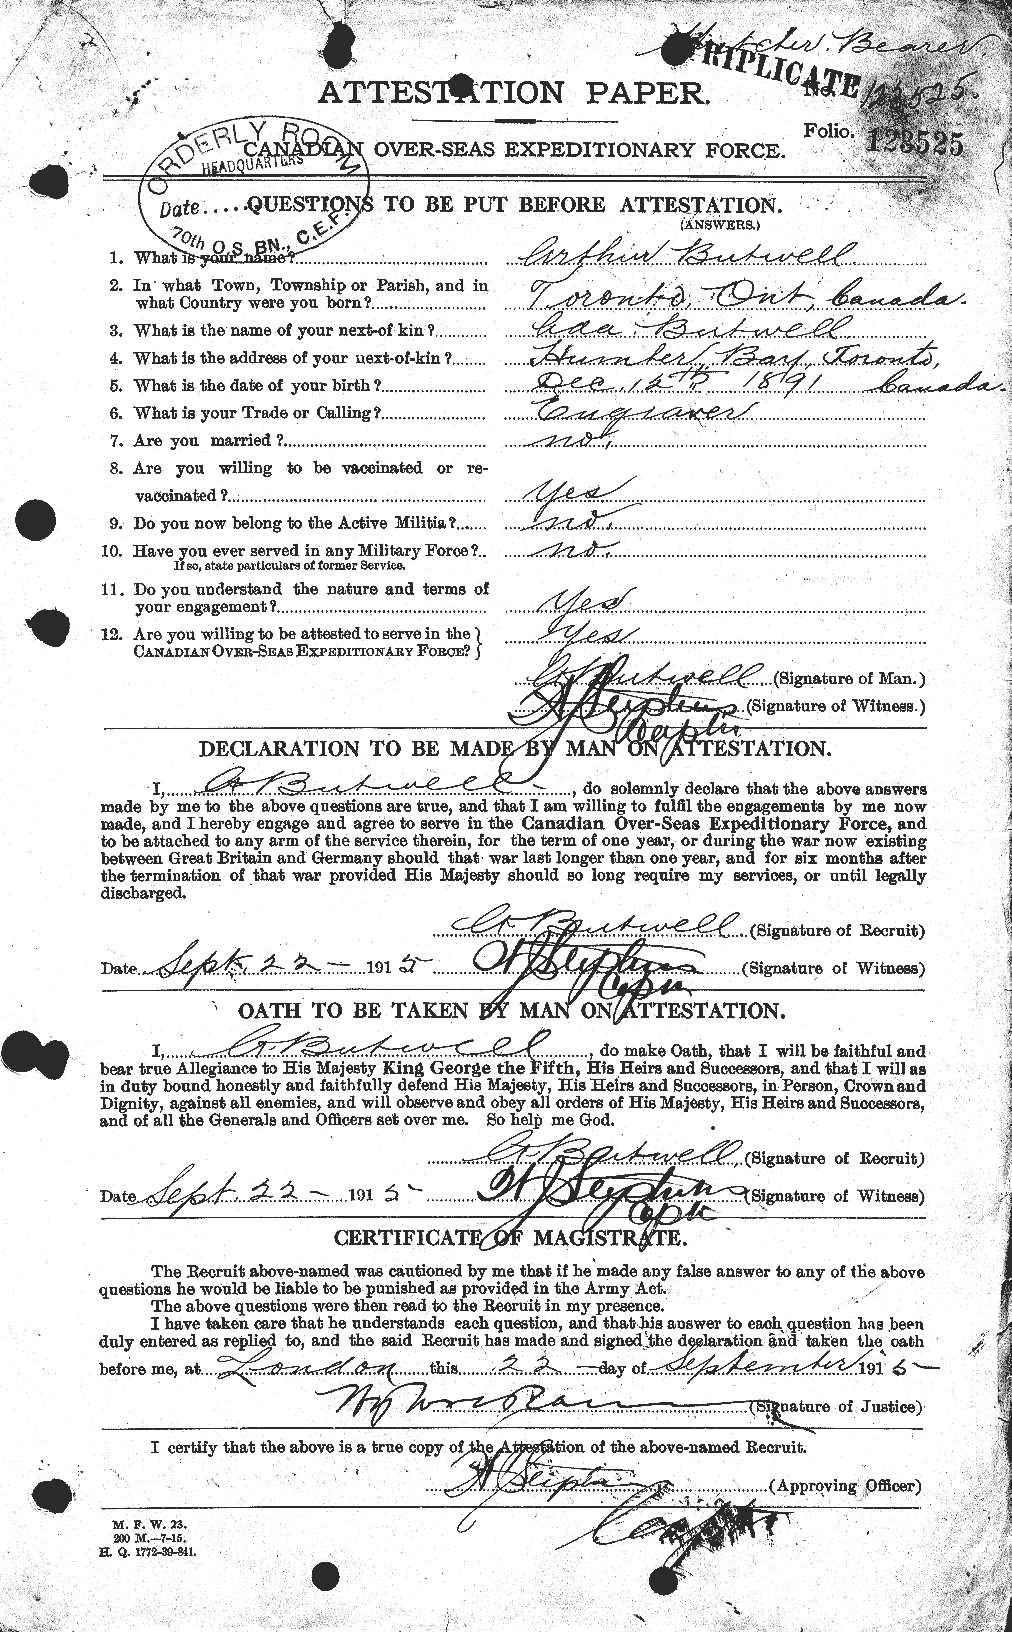 Dossiers du Personnel de la Première Guerre mondiale - CEC 275554a